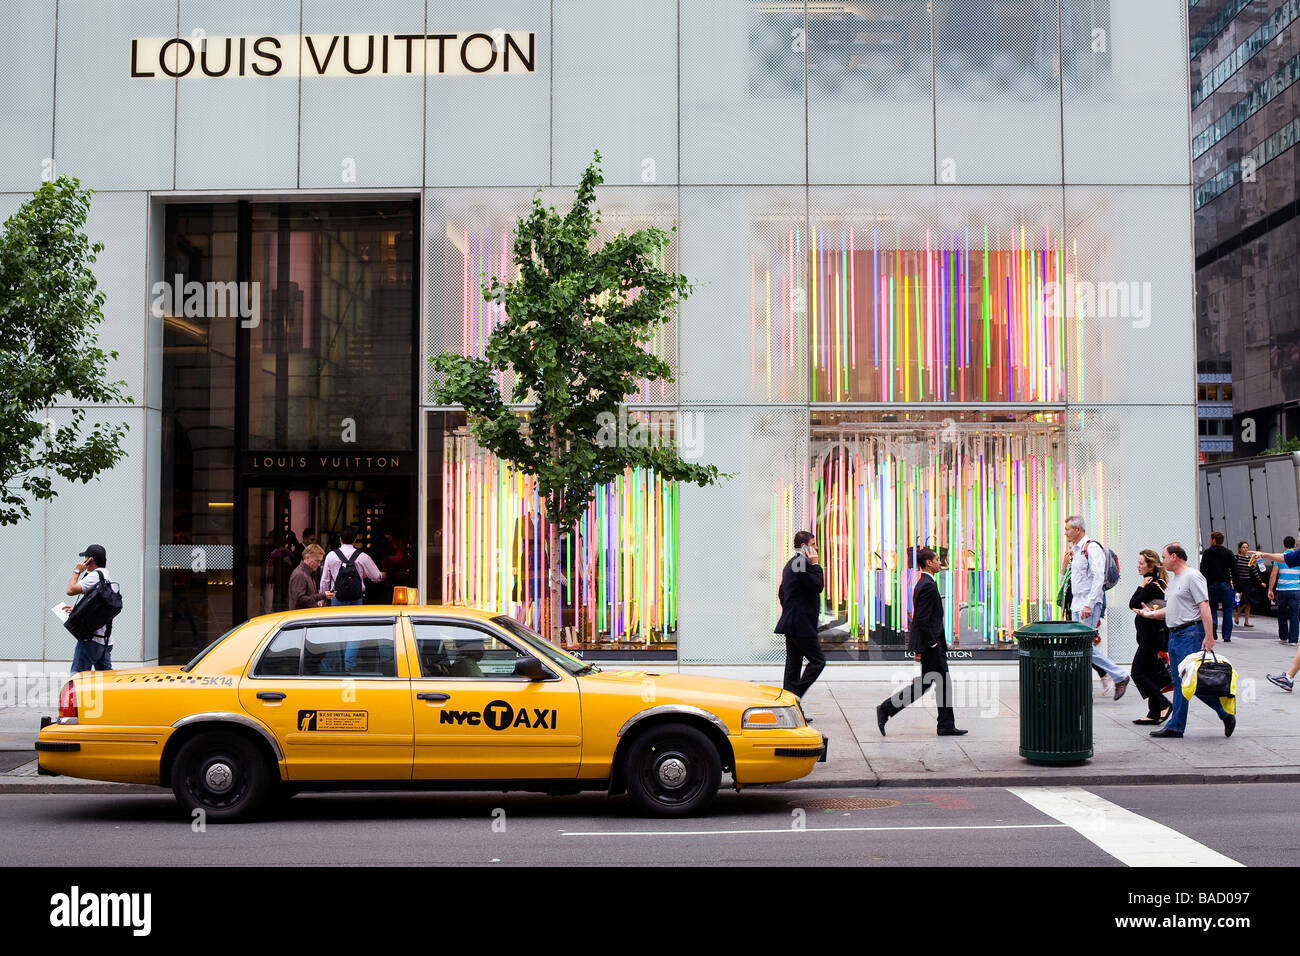 Louis Vuitton Macy S Garden City Ny The Art Of Mike Mignola